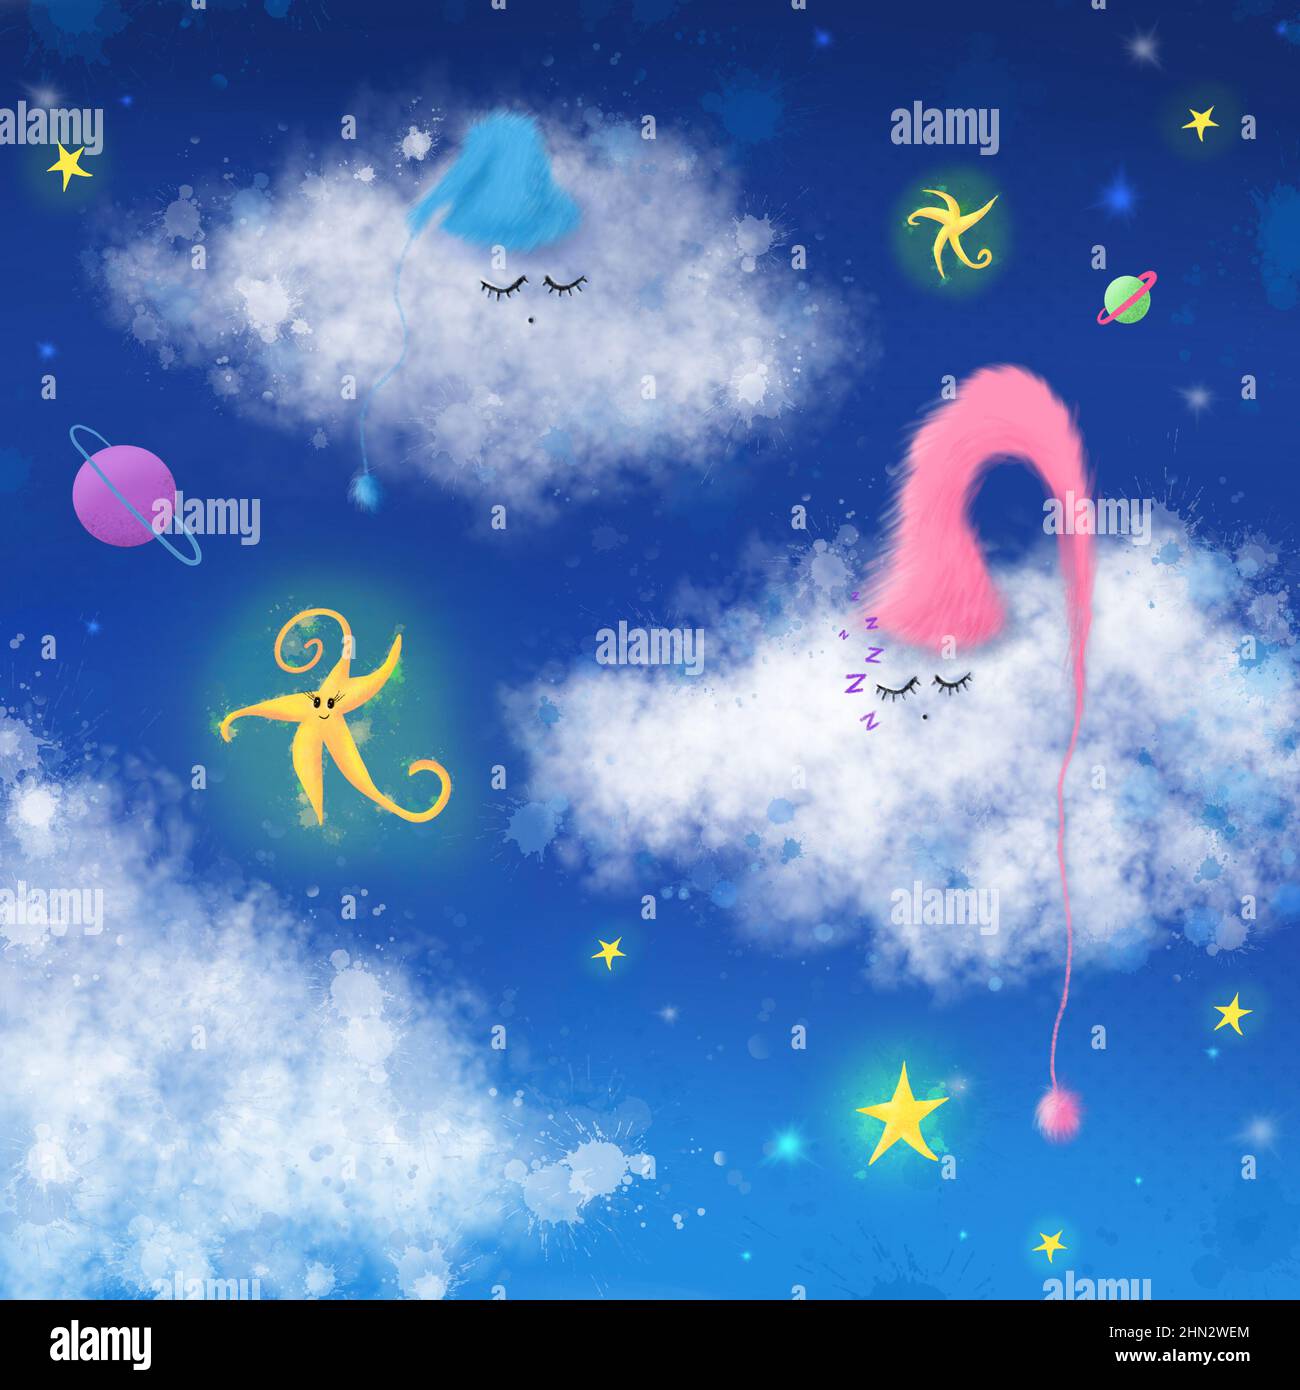 Niedliche, schlaffige Wolken am Himmel, süße Träume und gute Nacht Hintergrund Handzeichung Illustration Stockfoto